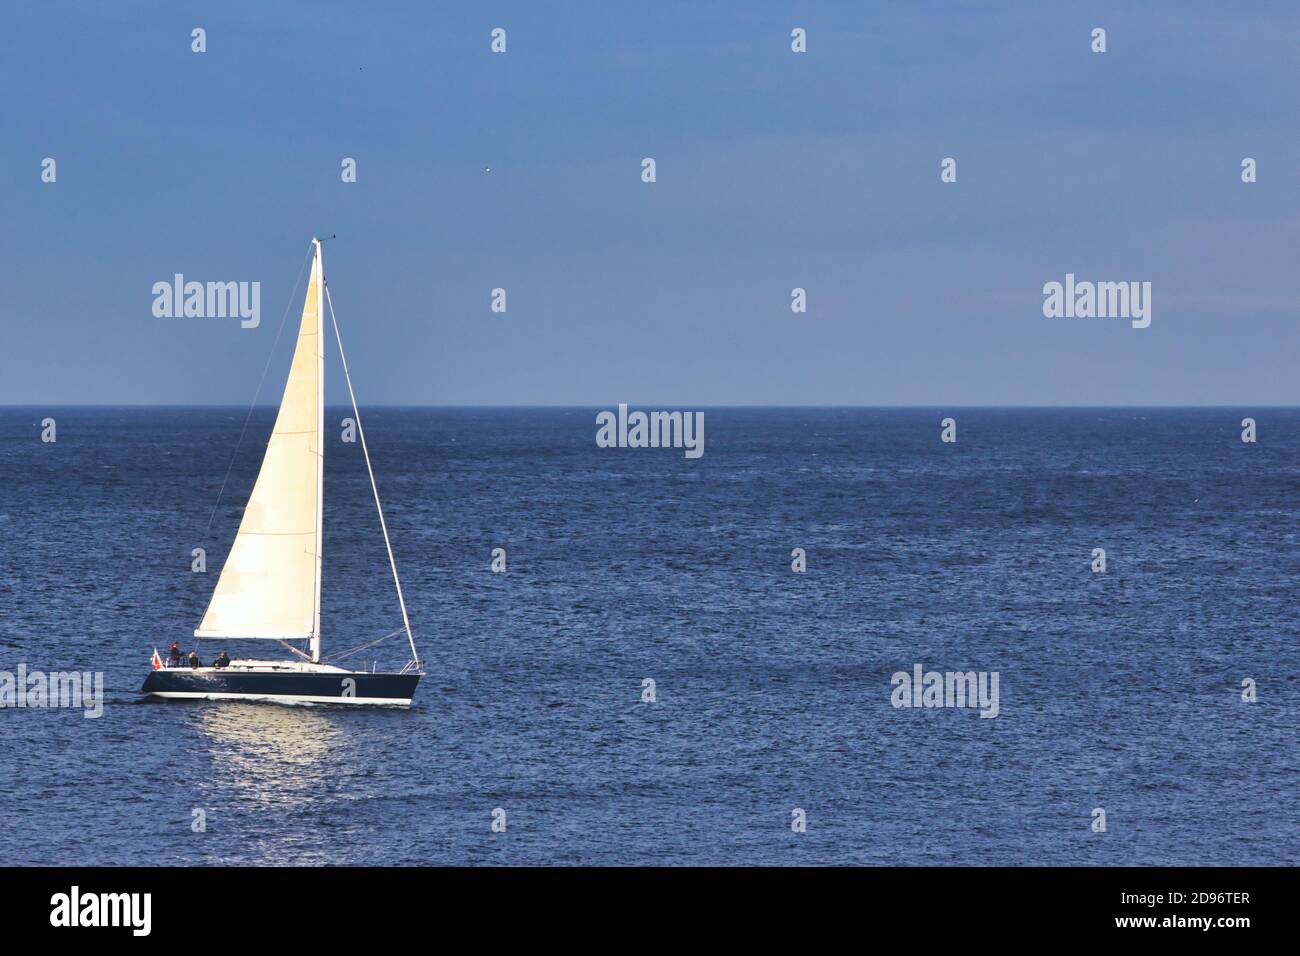 Voilier naviguant sur la mer avec un ciel bleu clair et l'horizon en arrière-plan Banque D'Images